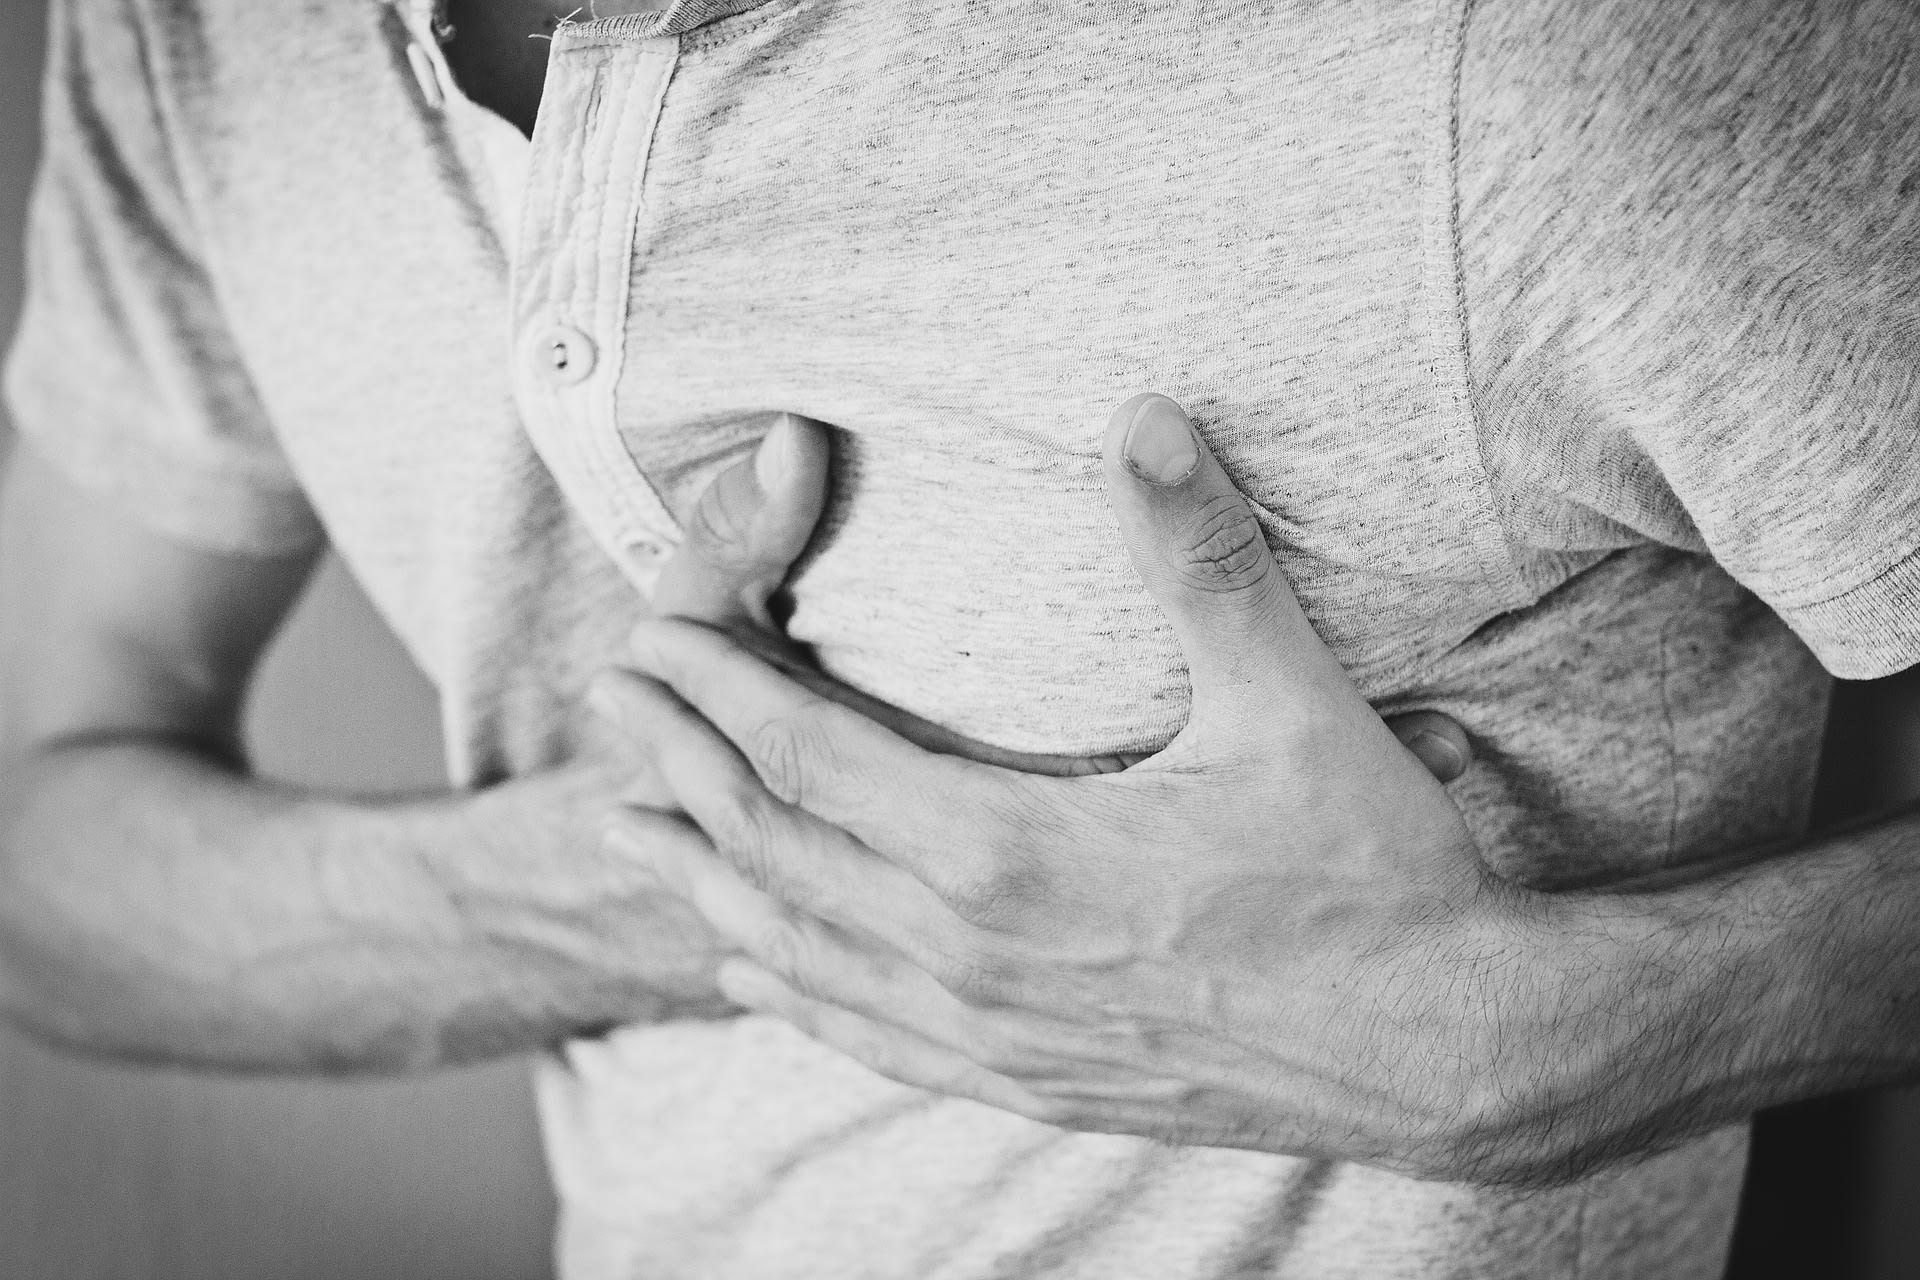 Češi umírají nejčastěji na srdeční onemocnění. Nejlepší prevencí je dobrá životospráva